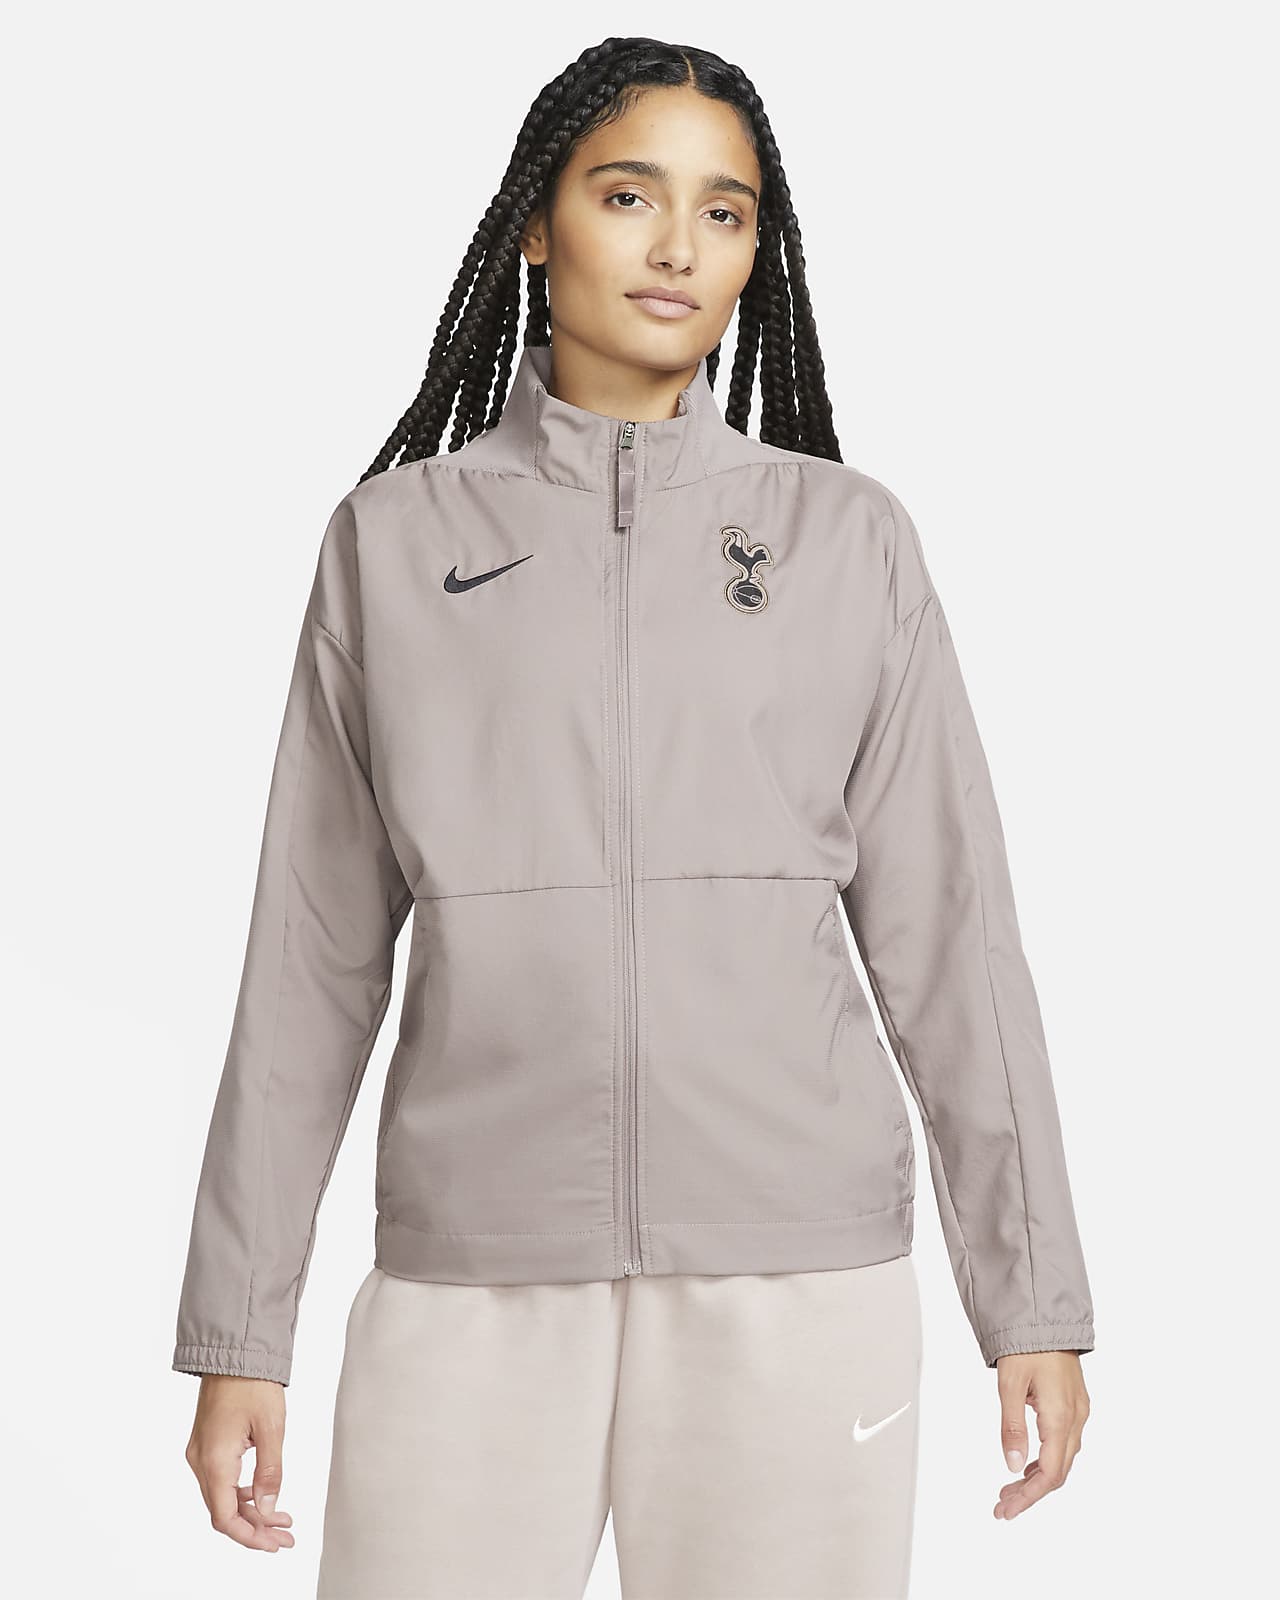 Tottenham Hotspur harmadik Nike Dri-FIT szőtt női futball-melegítőfelső